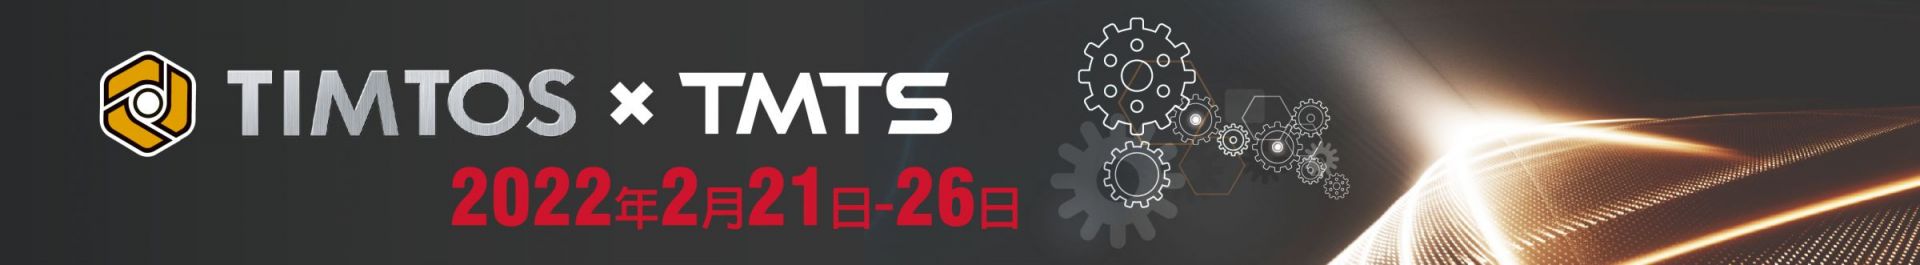 TIMTOS x TMTS 2022 معرض تايبيه الدولي للآلات الأدوات